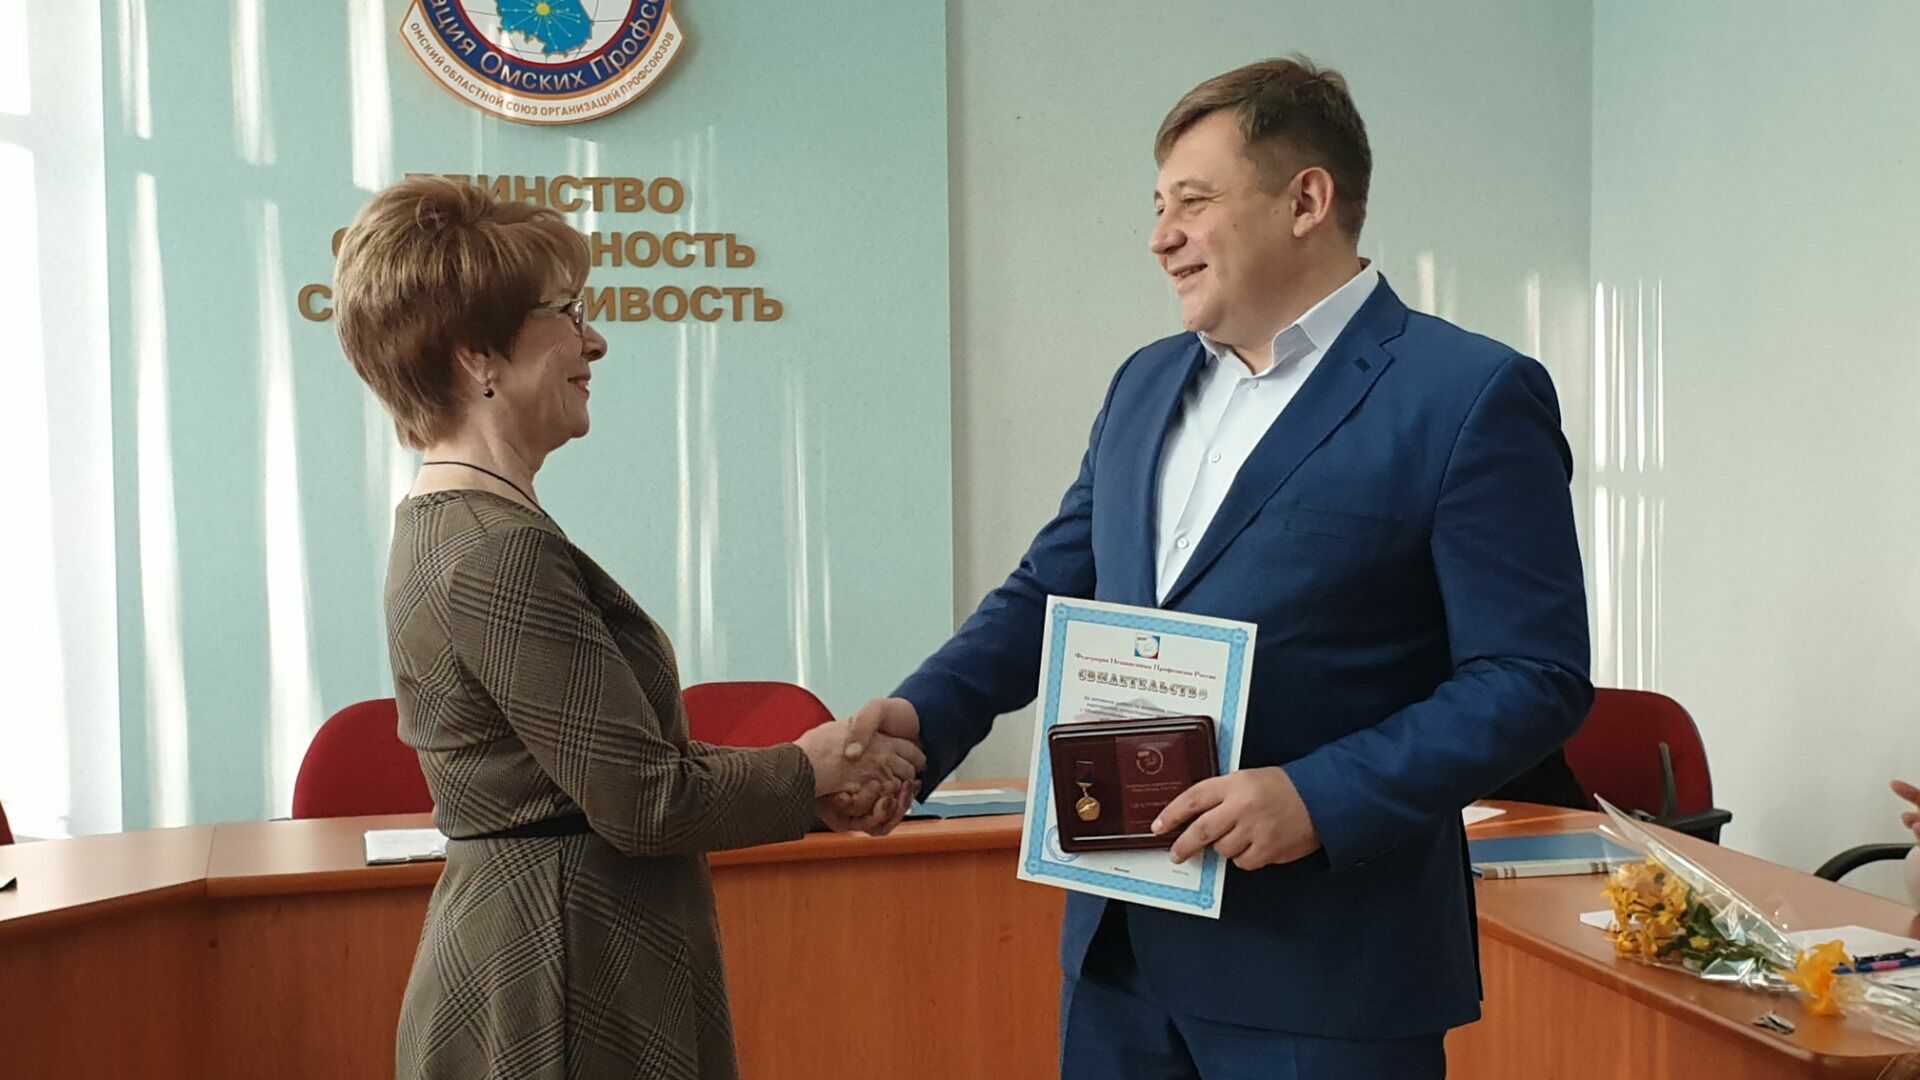 Гендиректор «Омскэлектро» Андрей Жуковский награжден почетным знаком «За содружество»